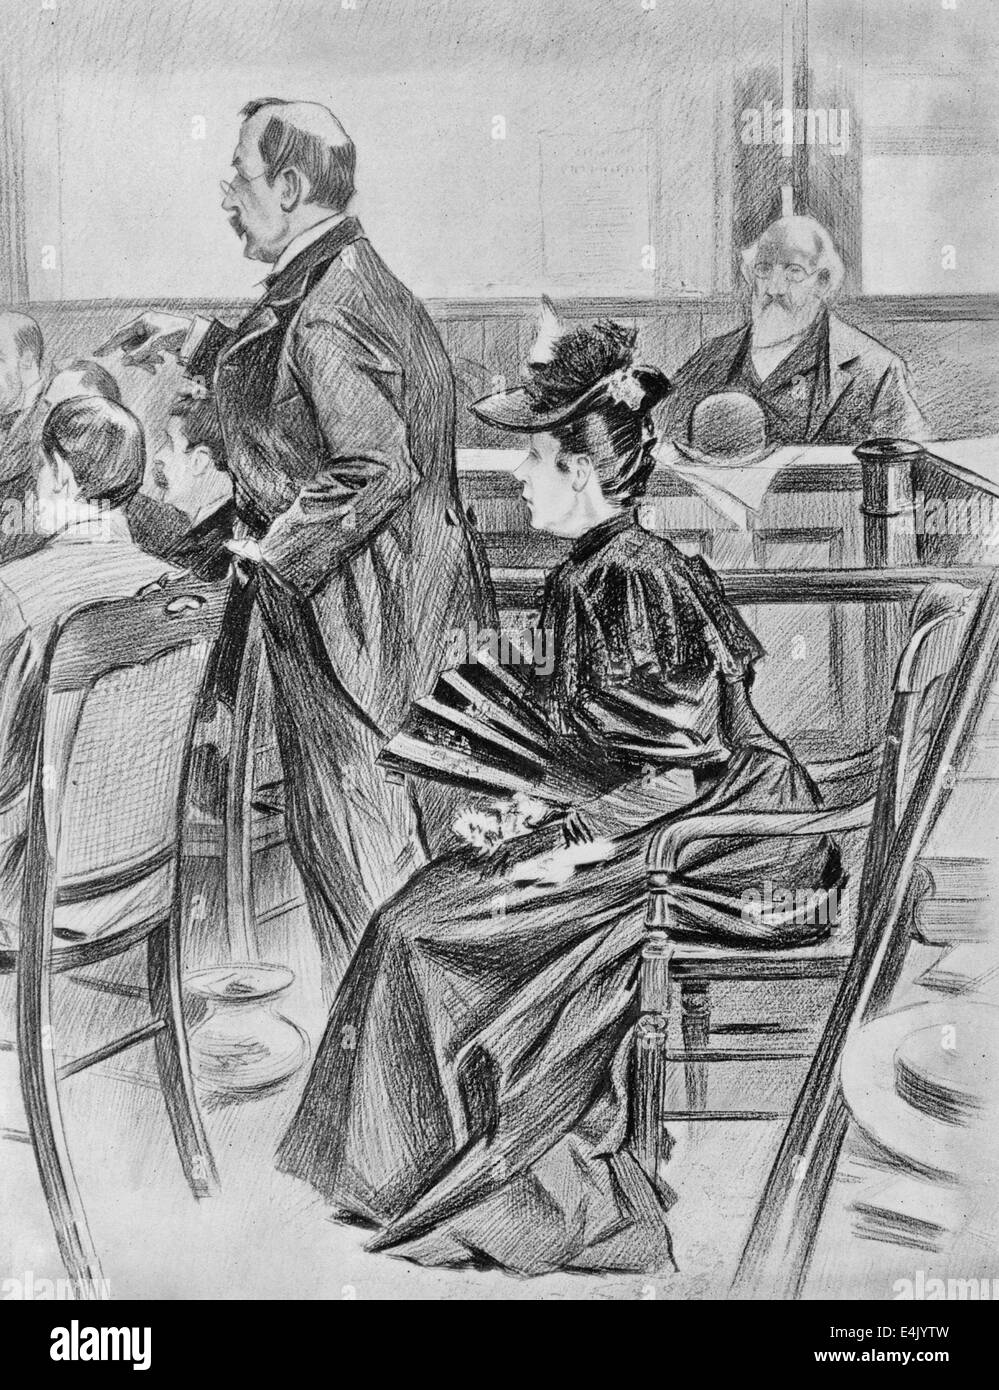 Le procès pour meurtre de Borden - une scène dans la salle d'audience avant l'acquittement - Lizzie Borden, l'accusé et son avocat, Ex-Governor Robinson, 1893 Banque D'Images